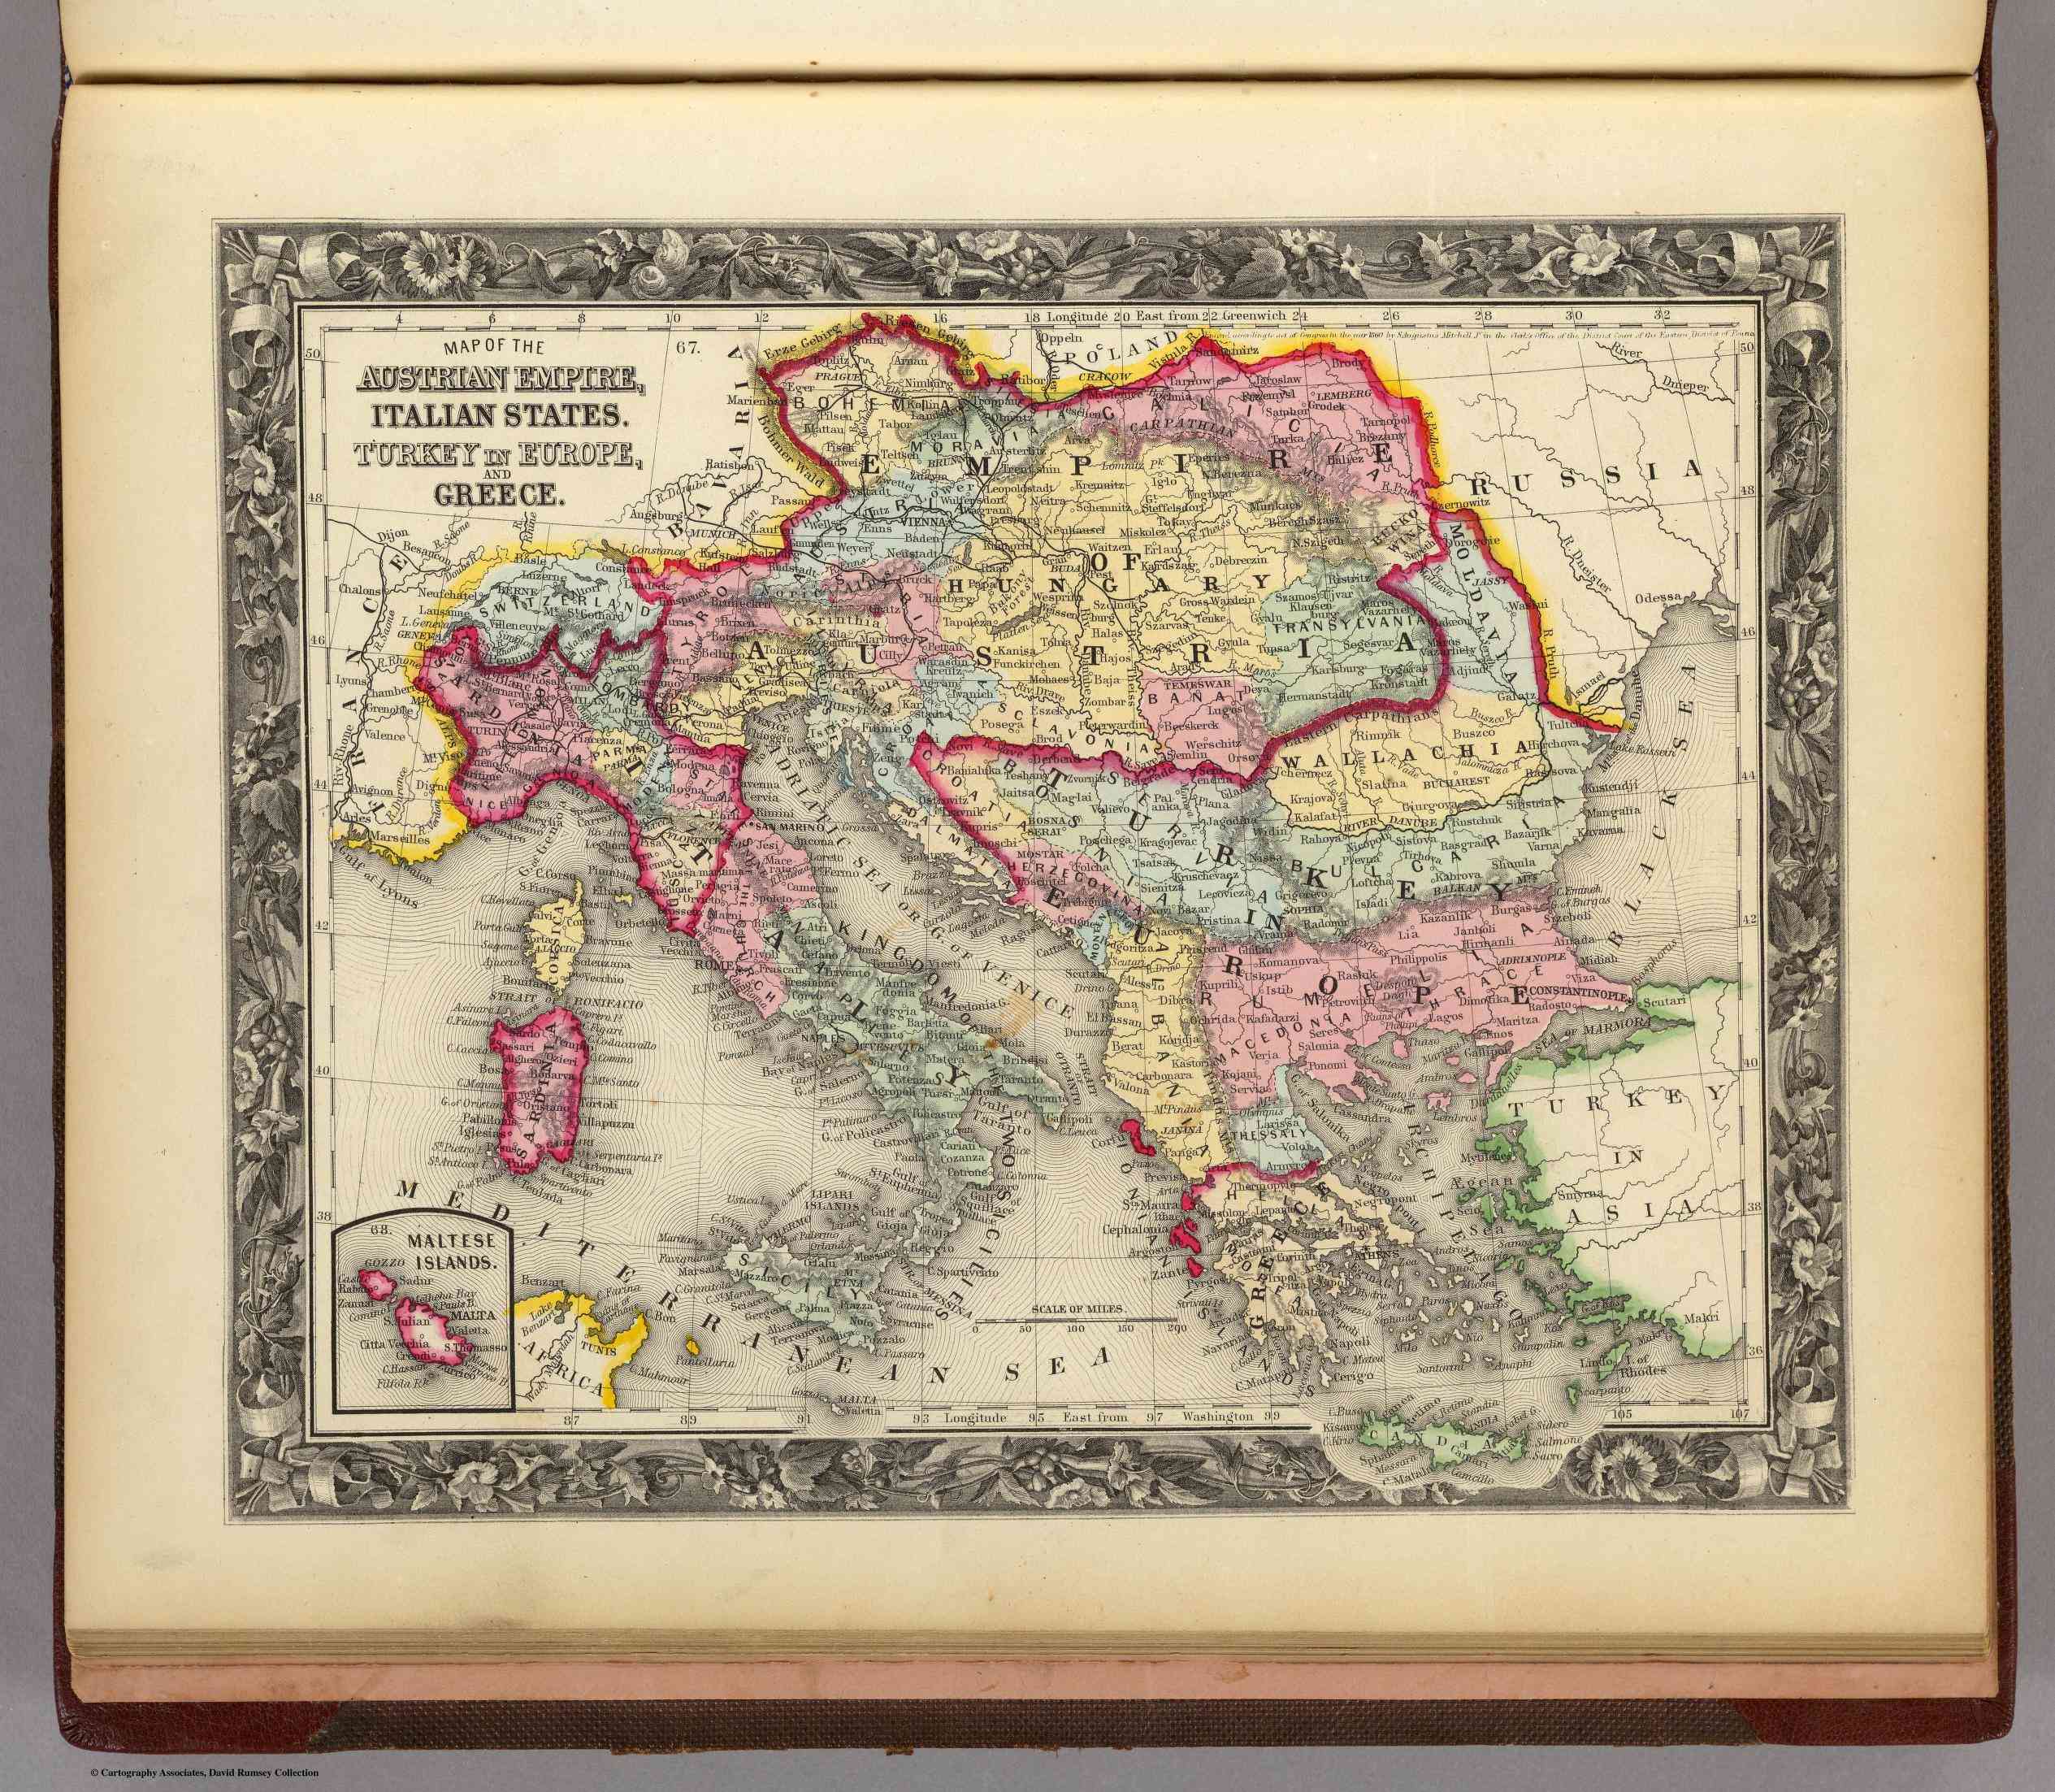 L'Austria e gli stati italiani e parte dell'impero turco intorno al 1860. By S. Augustus Mitchell, Jr. Pennsylvania 